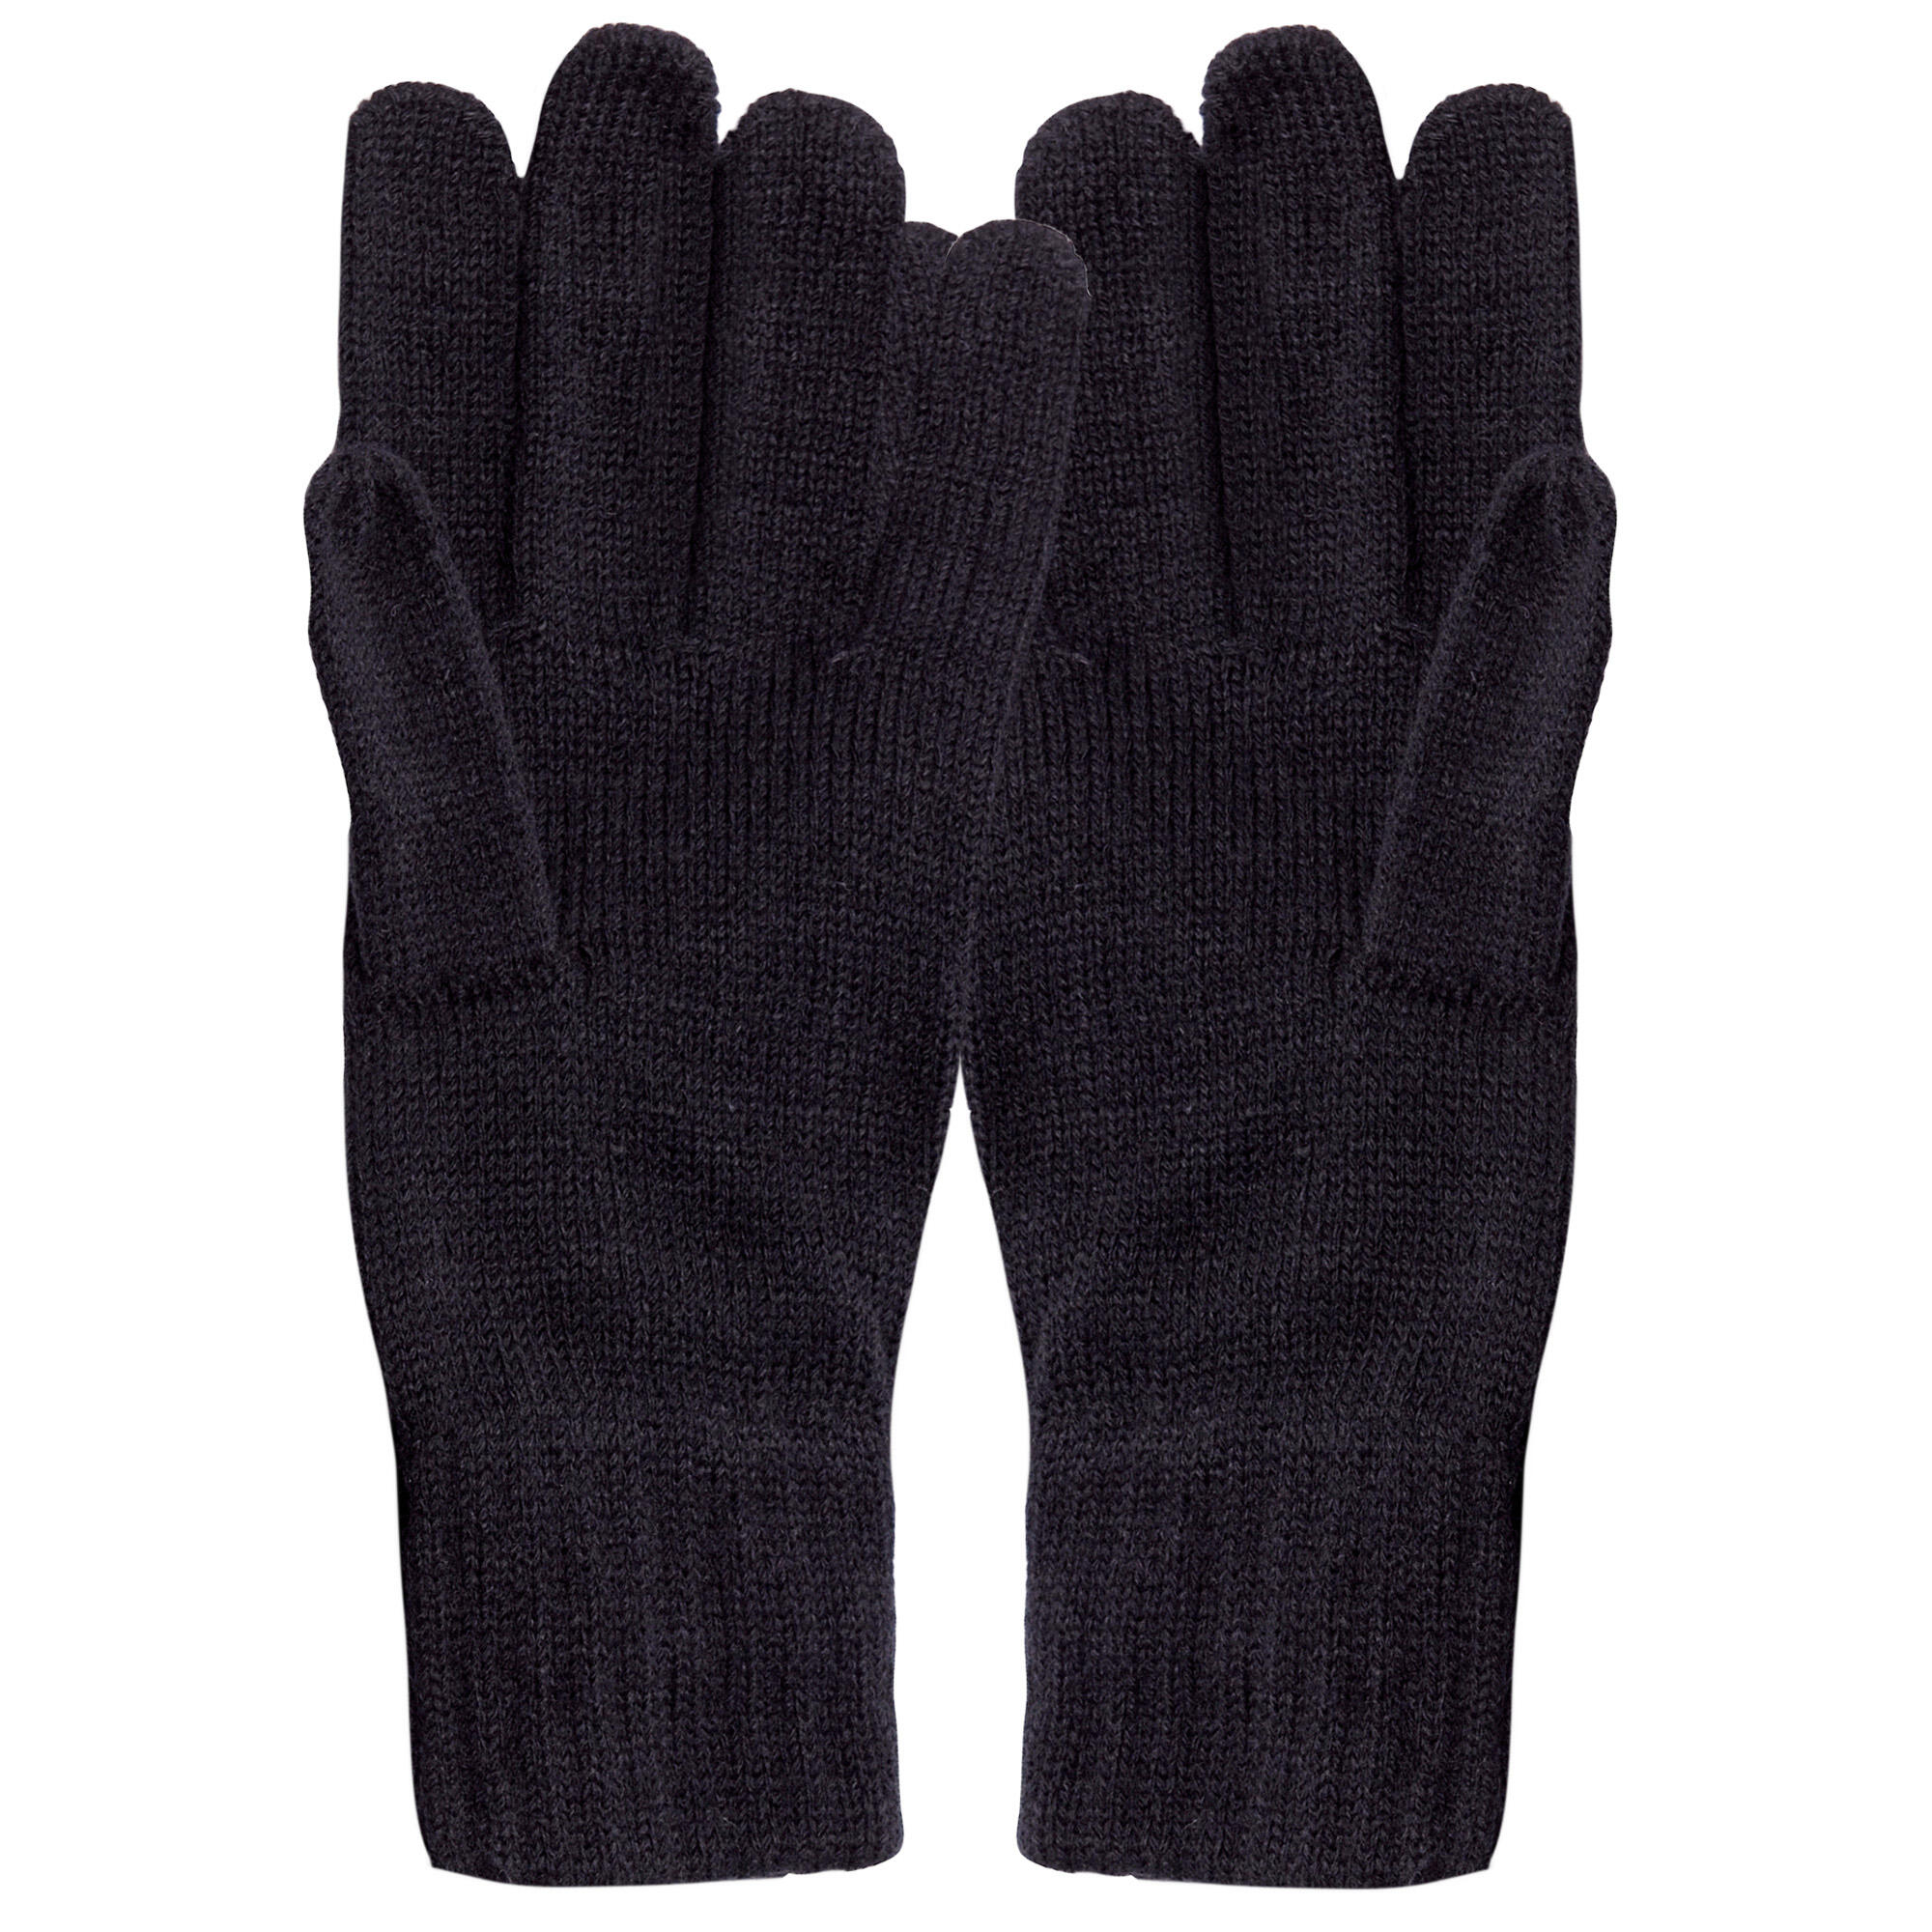 Unisex Knitted Winter Gloves (Black) 2/4